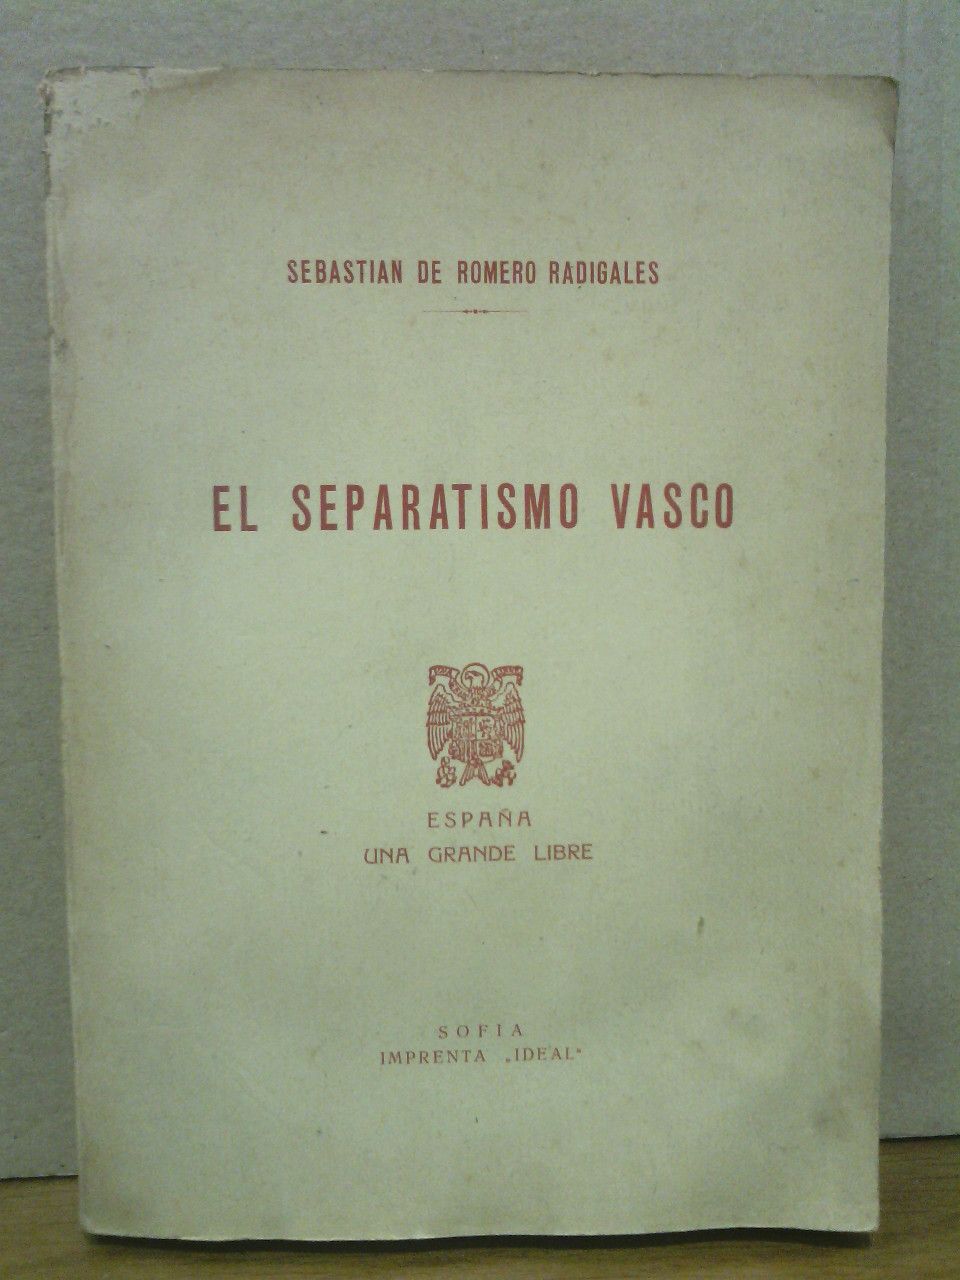 ROMERO RADIGALES, Sebastin de - El Separatismo Vasco